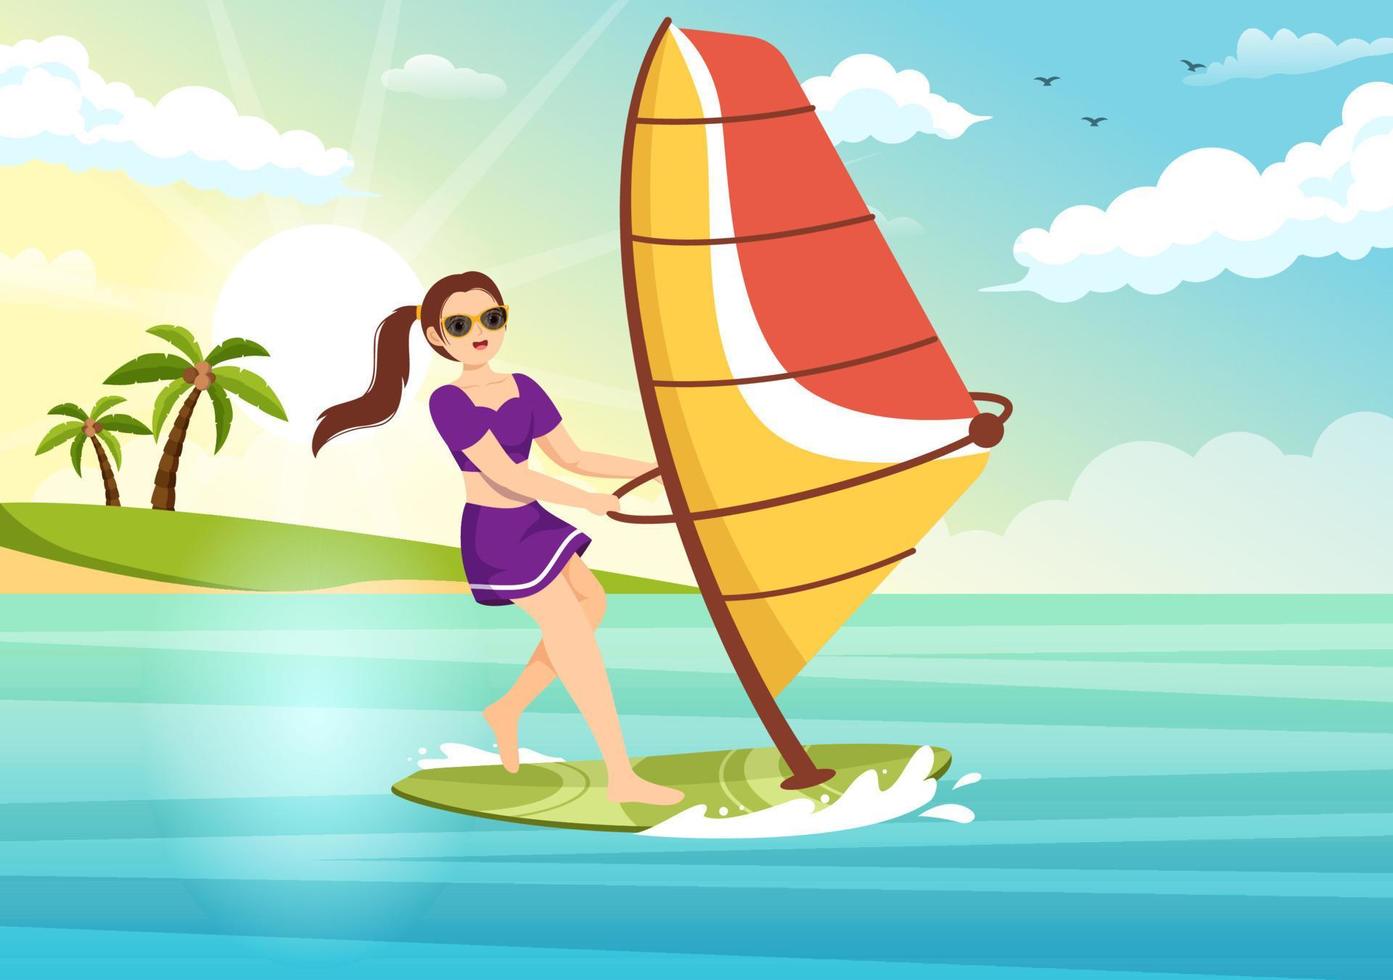 windsurf com a pessoa de pé no barco à vela e segurando a vela na ilustração de modelos desenhados à mão de desenhos animados planos de esportes aquáticos extremos vetor